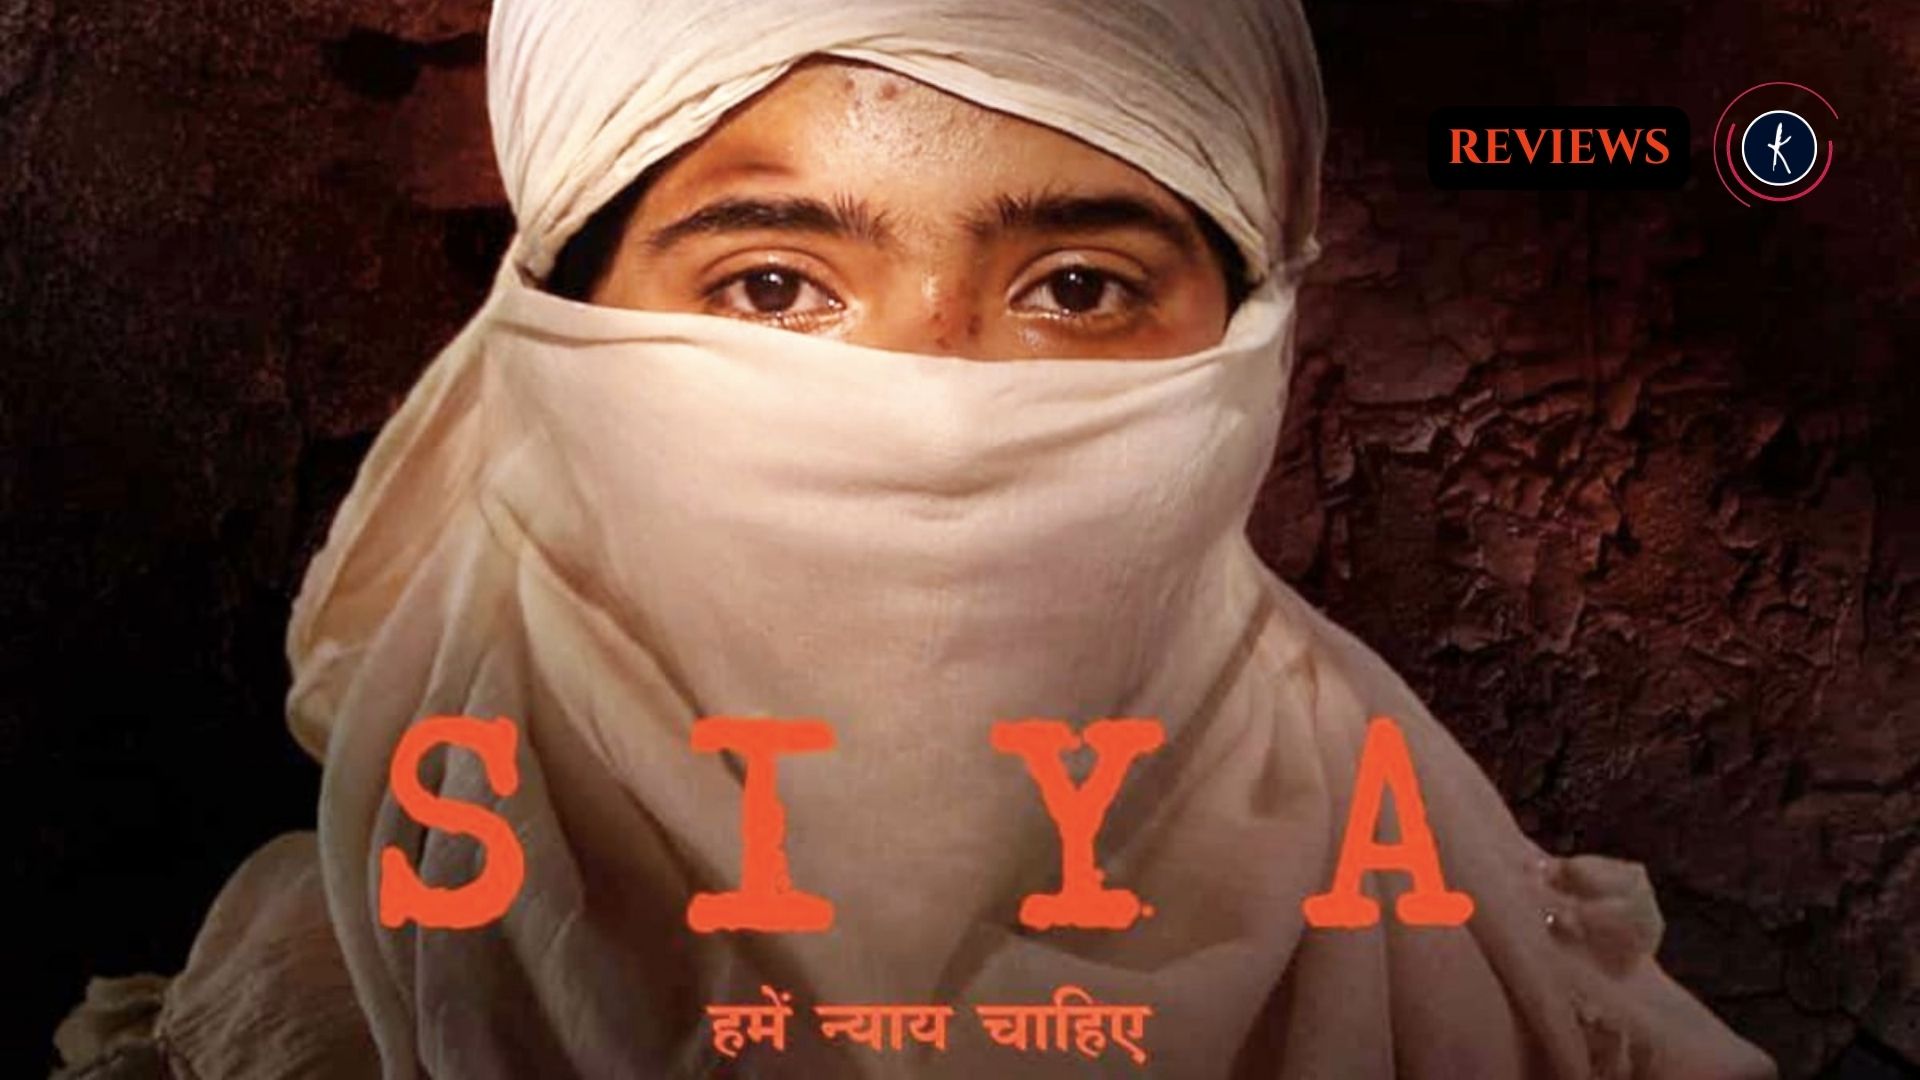 मनोरंजन से बहुत दूर की एक विशेष फिल्म है 'सिया''s image